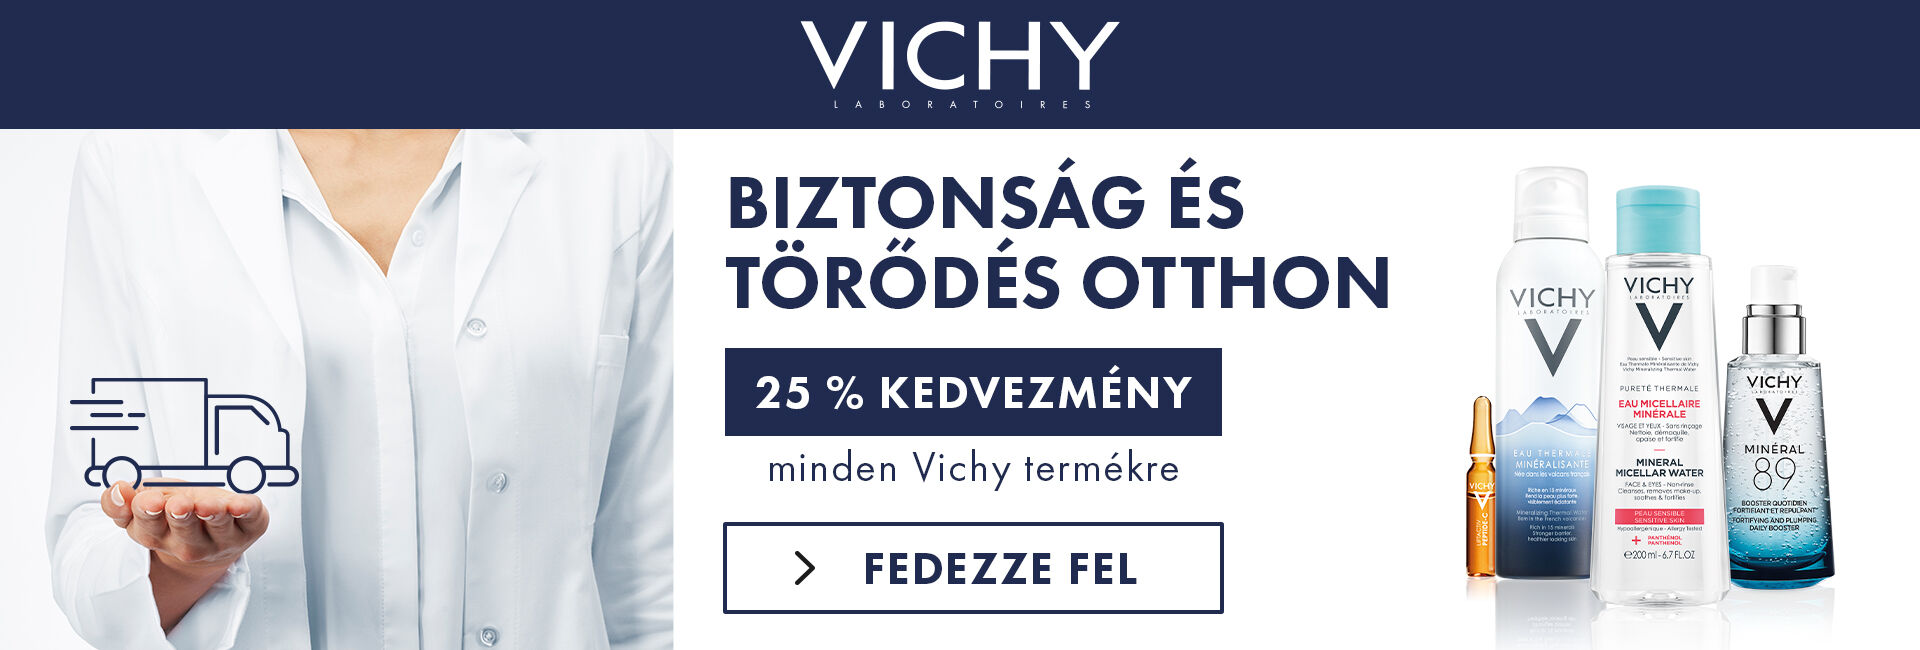 2020. március 23-30. között minden Vichy terméket 25% kedvezménnyel kínálunk! 